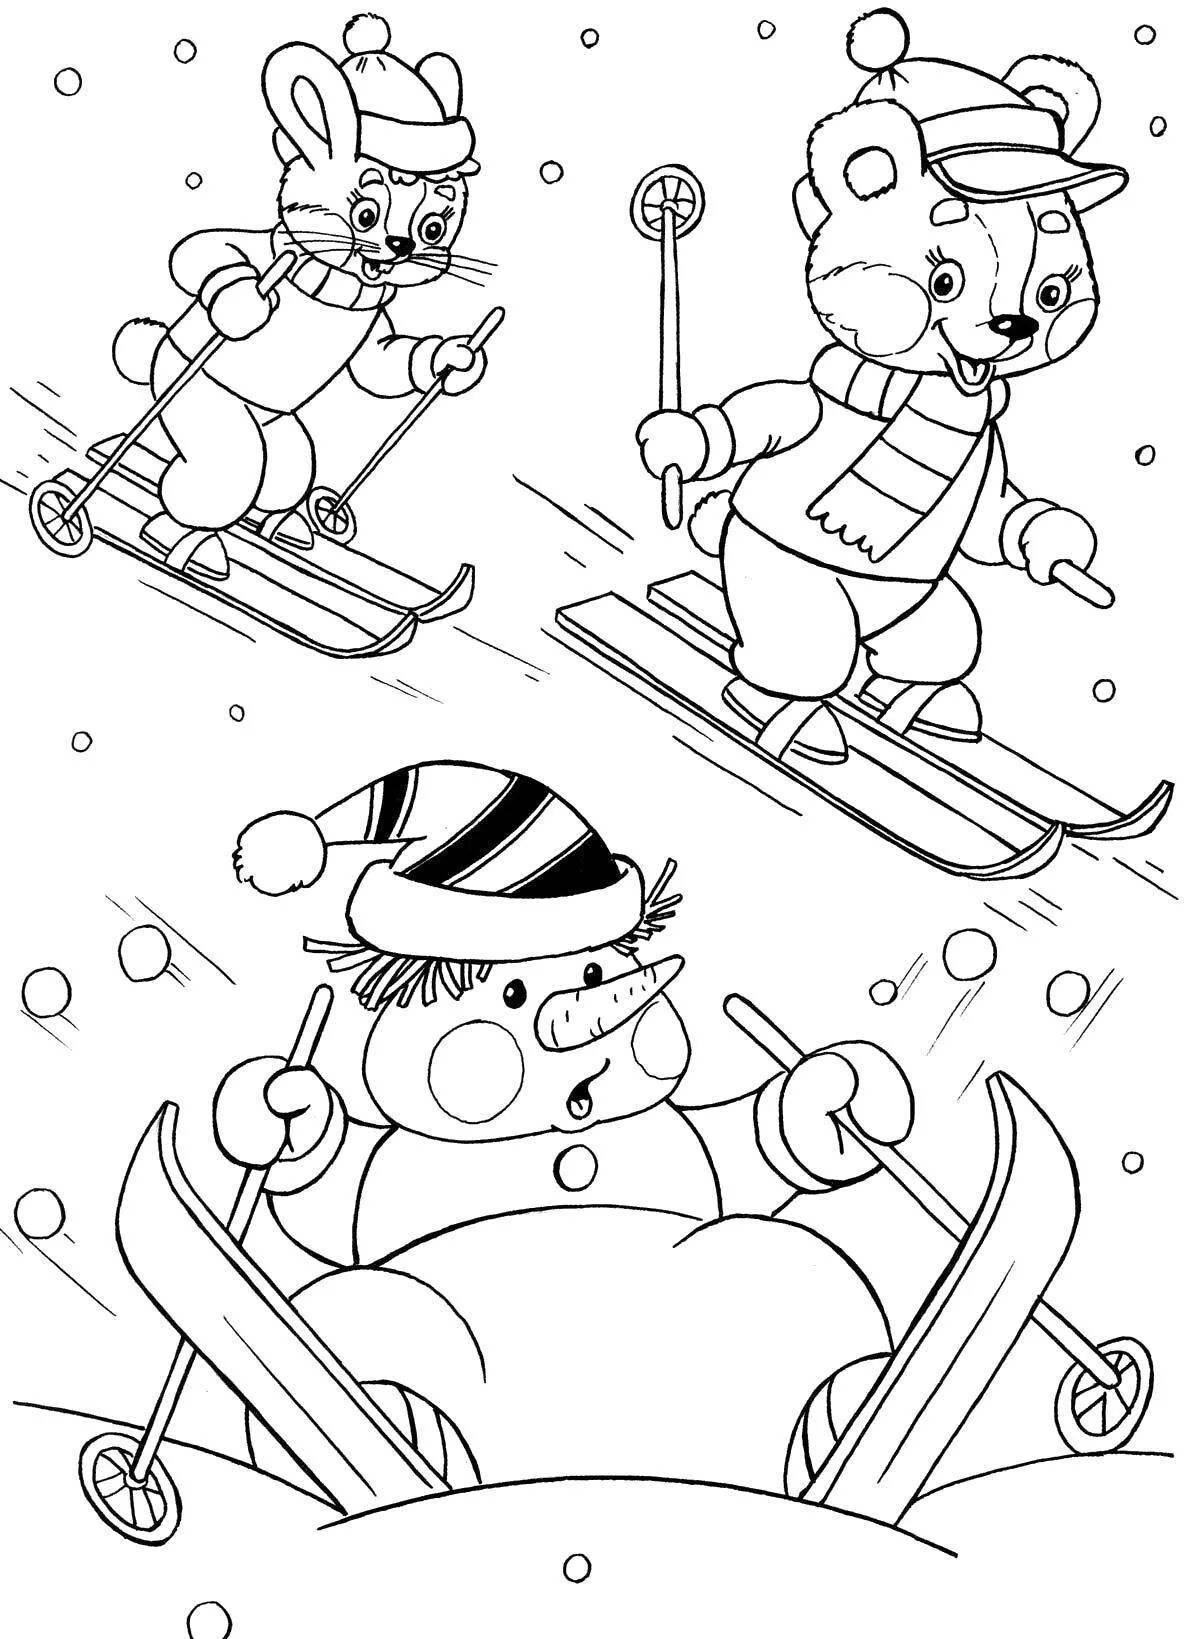 Увлекательная семейная раскраска для катания на лыжах